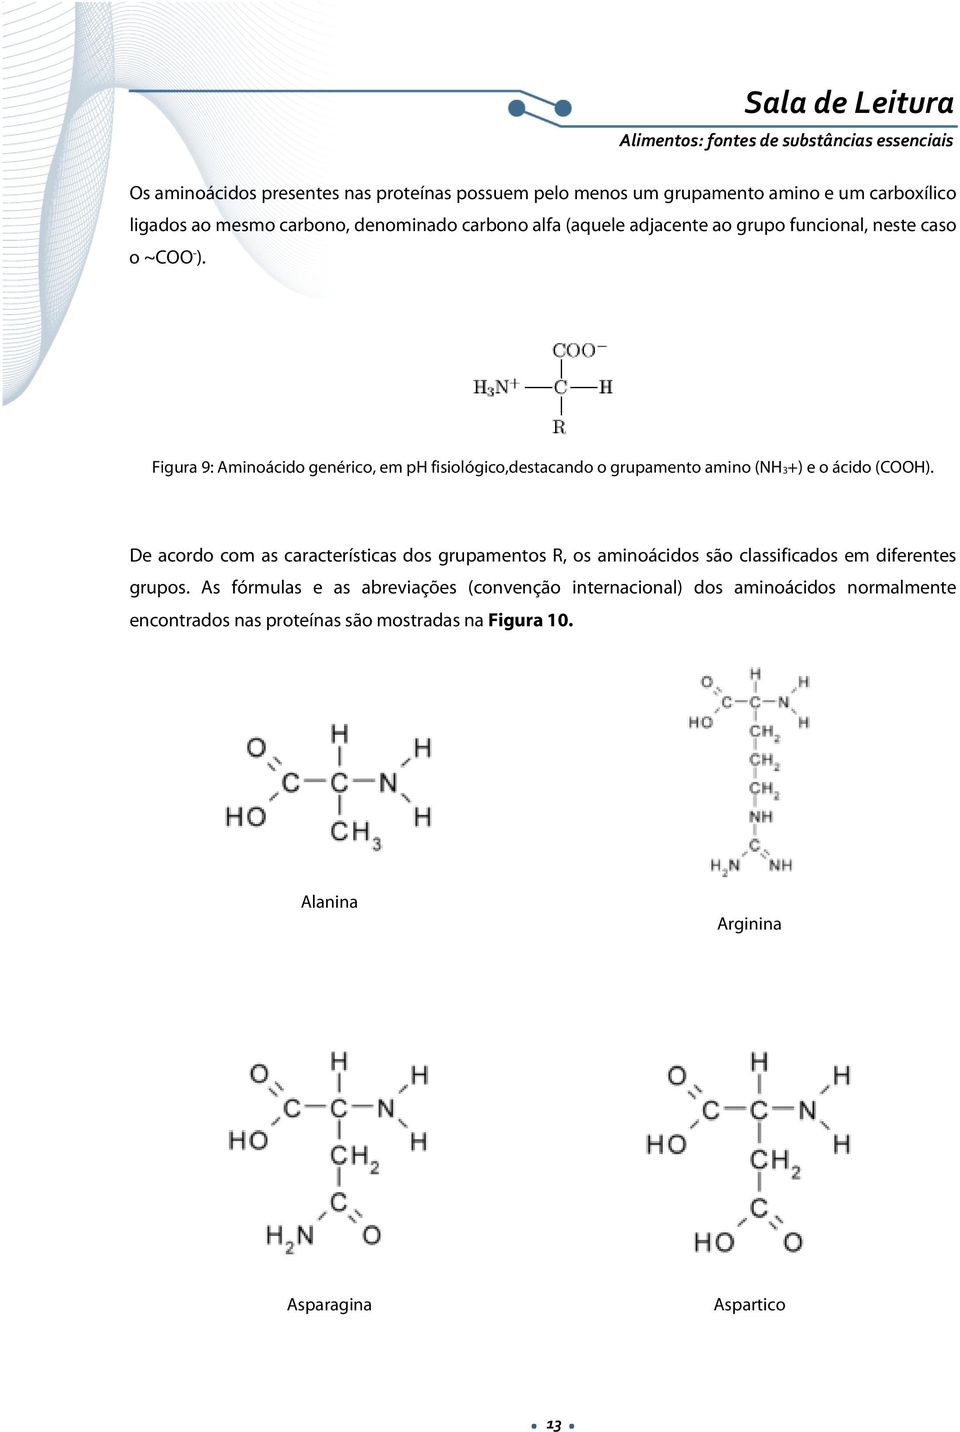 Figura 9: Aminoácido genérico, em ph fisiológico,destacando o grupamento amino (NH3+) e o ácido (COOH).